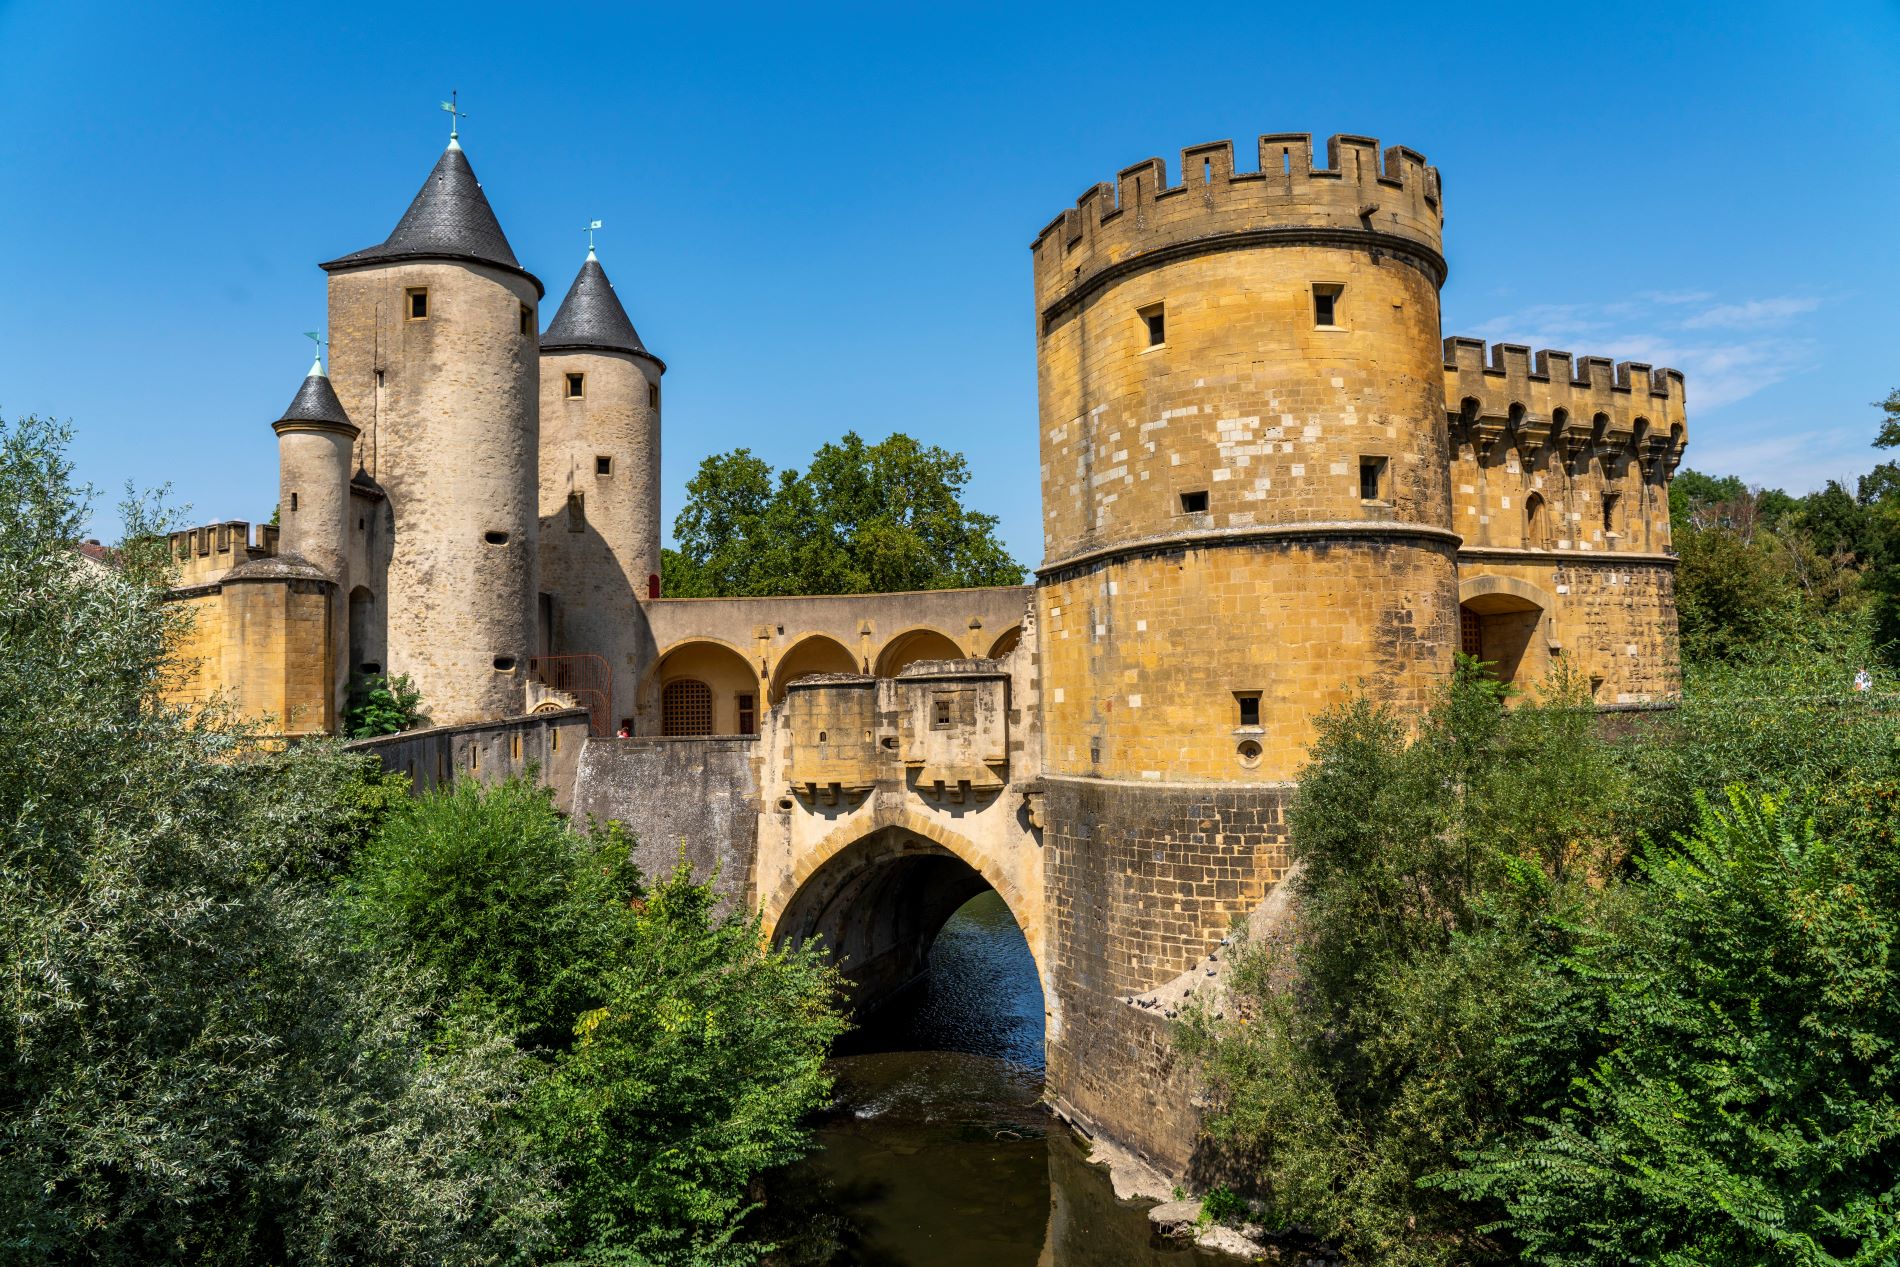 Une ancienne forteresse enjambe la rivière. Il est construit en briques jaunes et grises et comporte trois tours sur la gauche et de grandes tours rondes sur la droite.